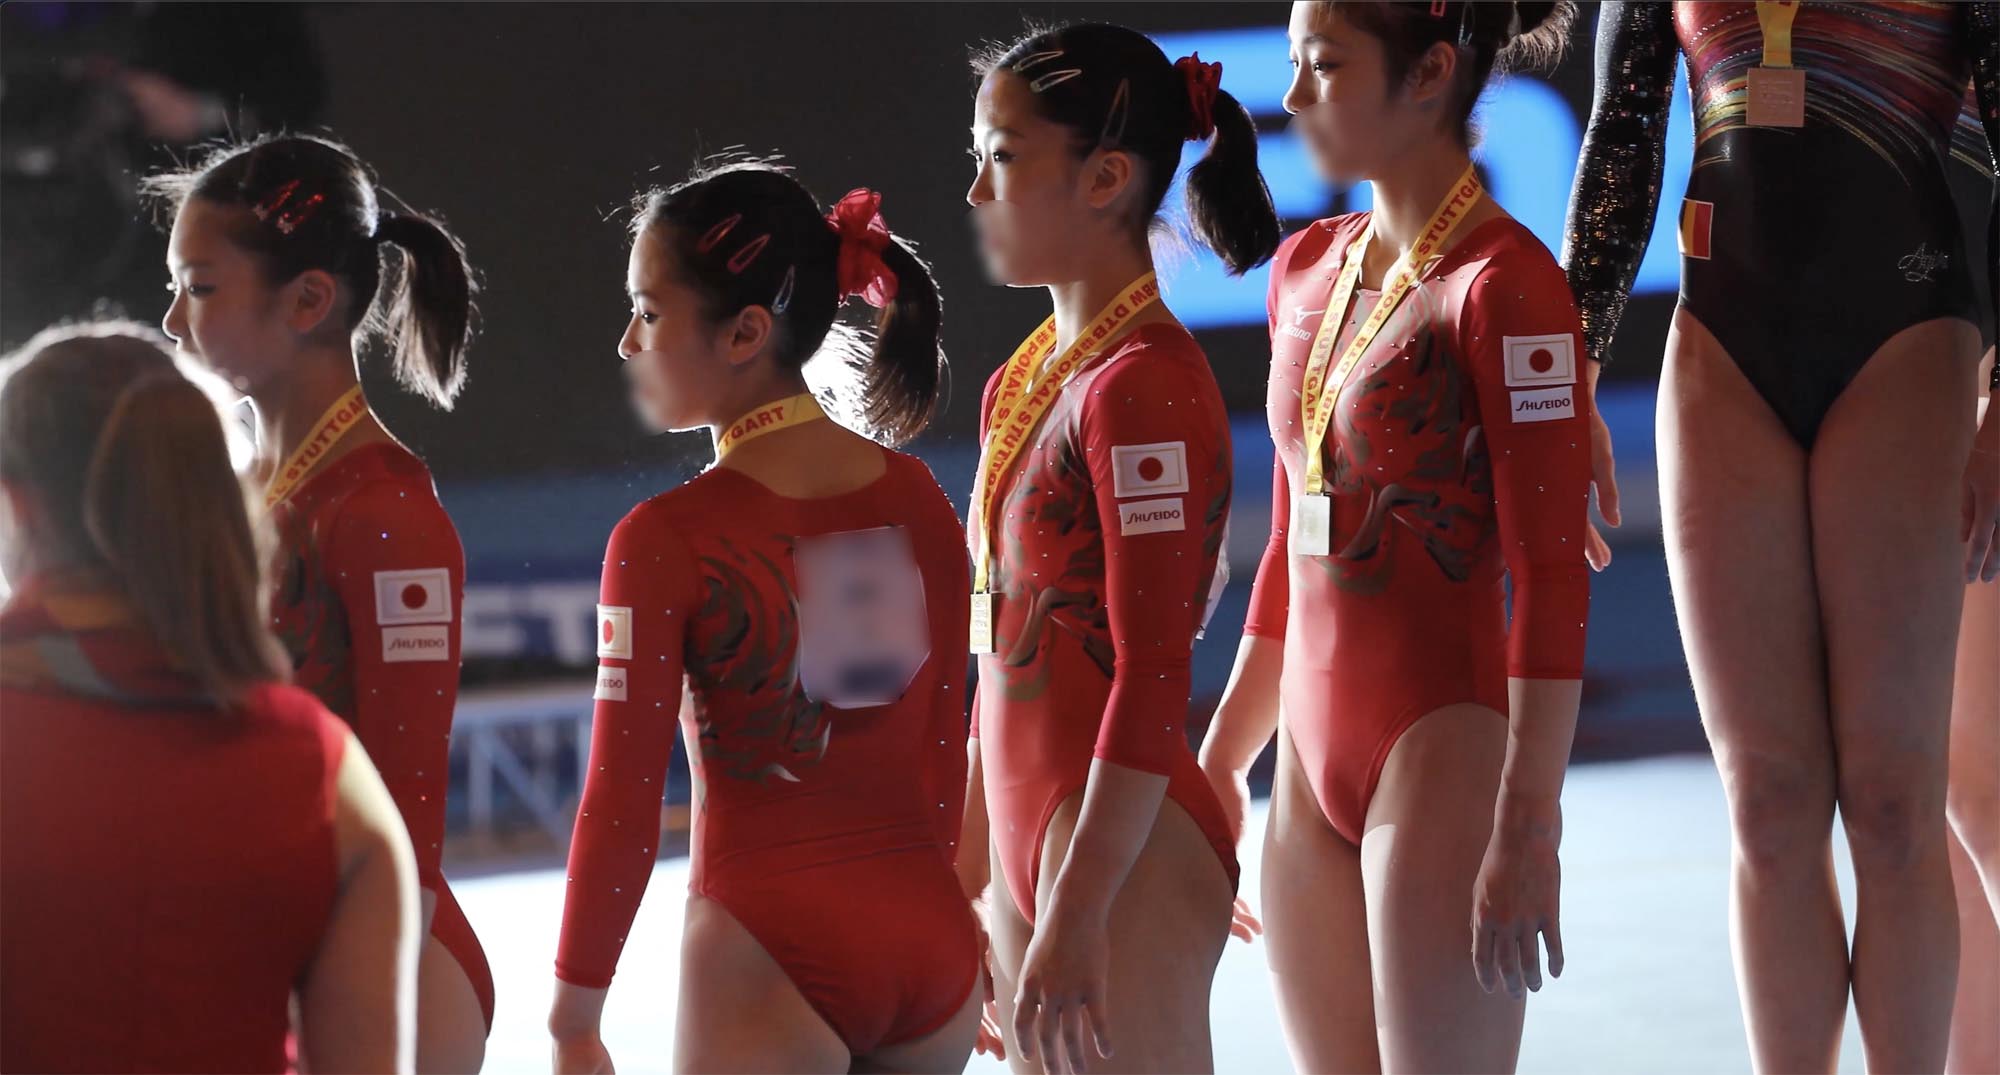 2018体操国際大会日本代表08 ゼッケンナンバー２の選手赤色ユニフォーム&チーム表彰式